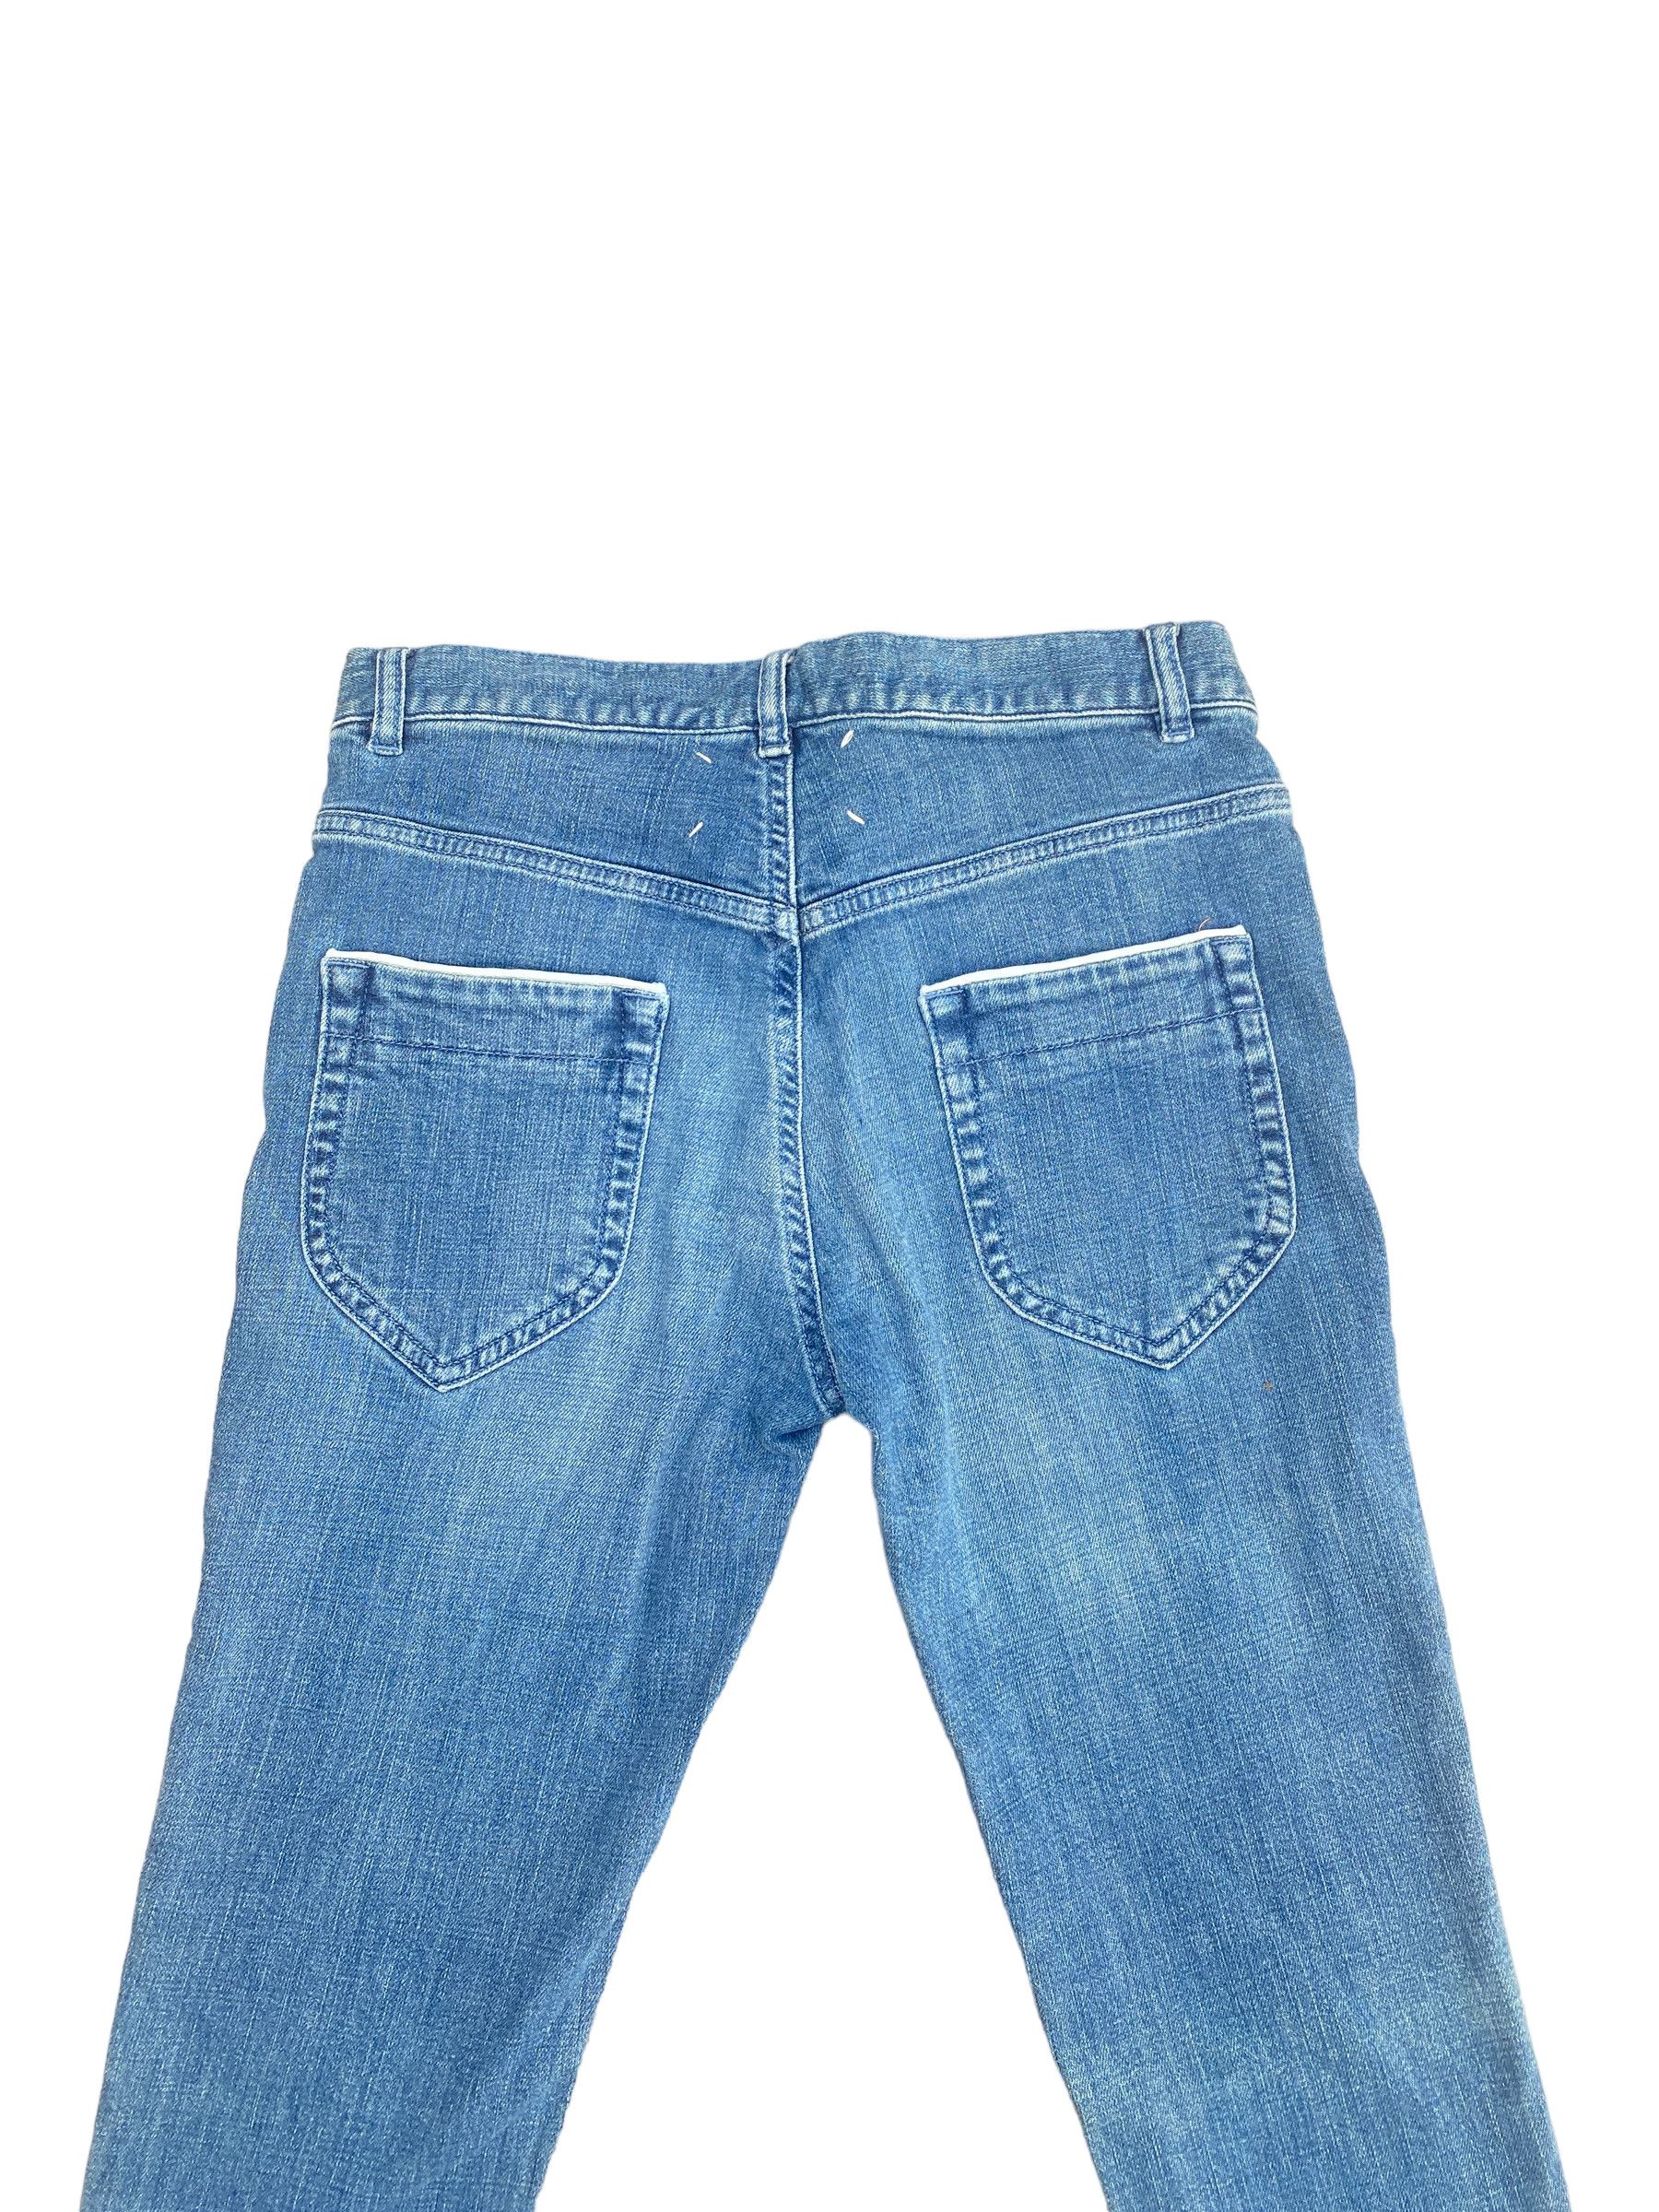 Maison Margiela SS 2008 Light blue denim jeans Size US 28 / EU 44 - 1 Preview